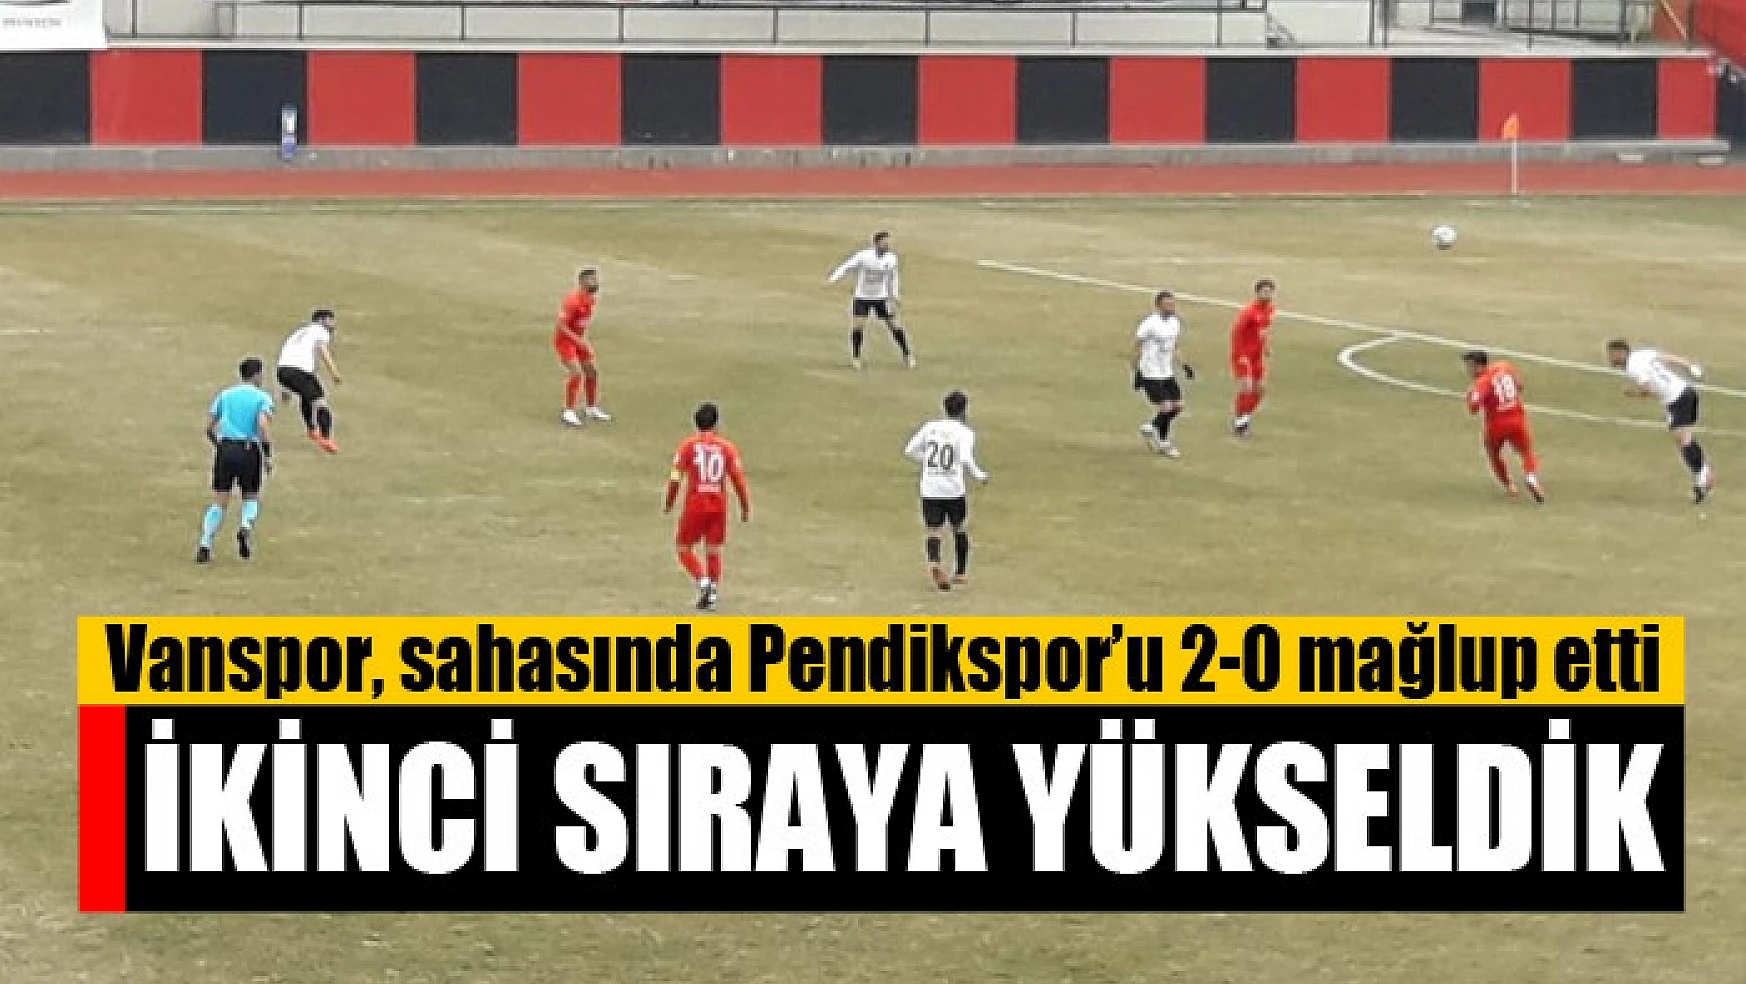 Vanspor, sahasında Pendikspor'u 2-0 mağlup etti İkinci sıraya yükseldik